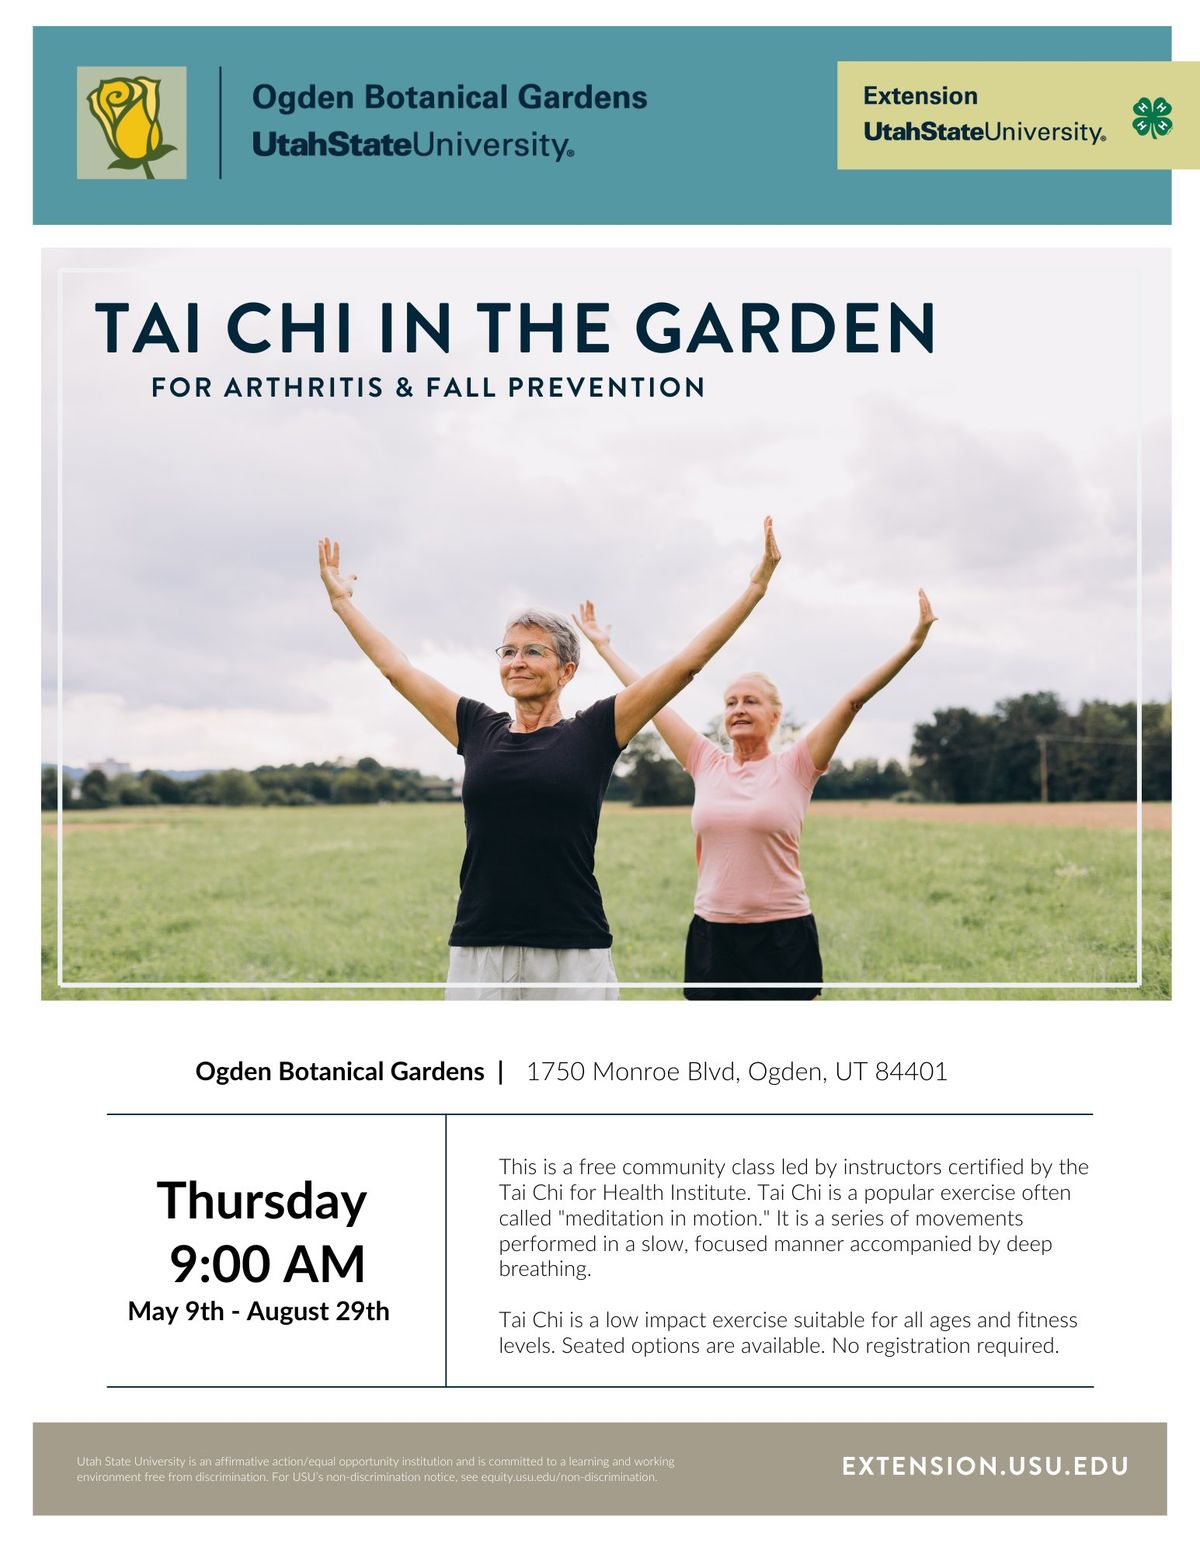 Tai-Chi in the Garden